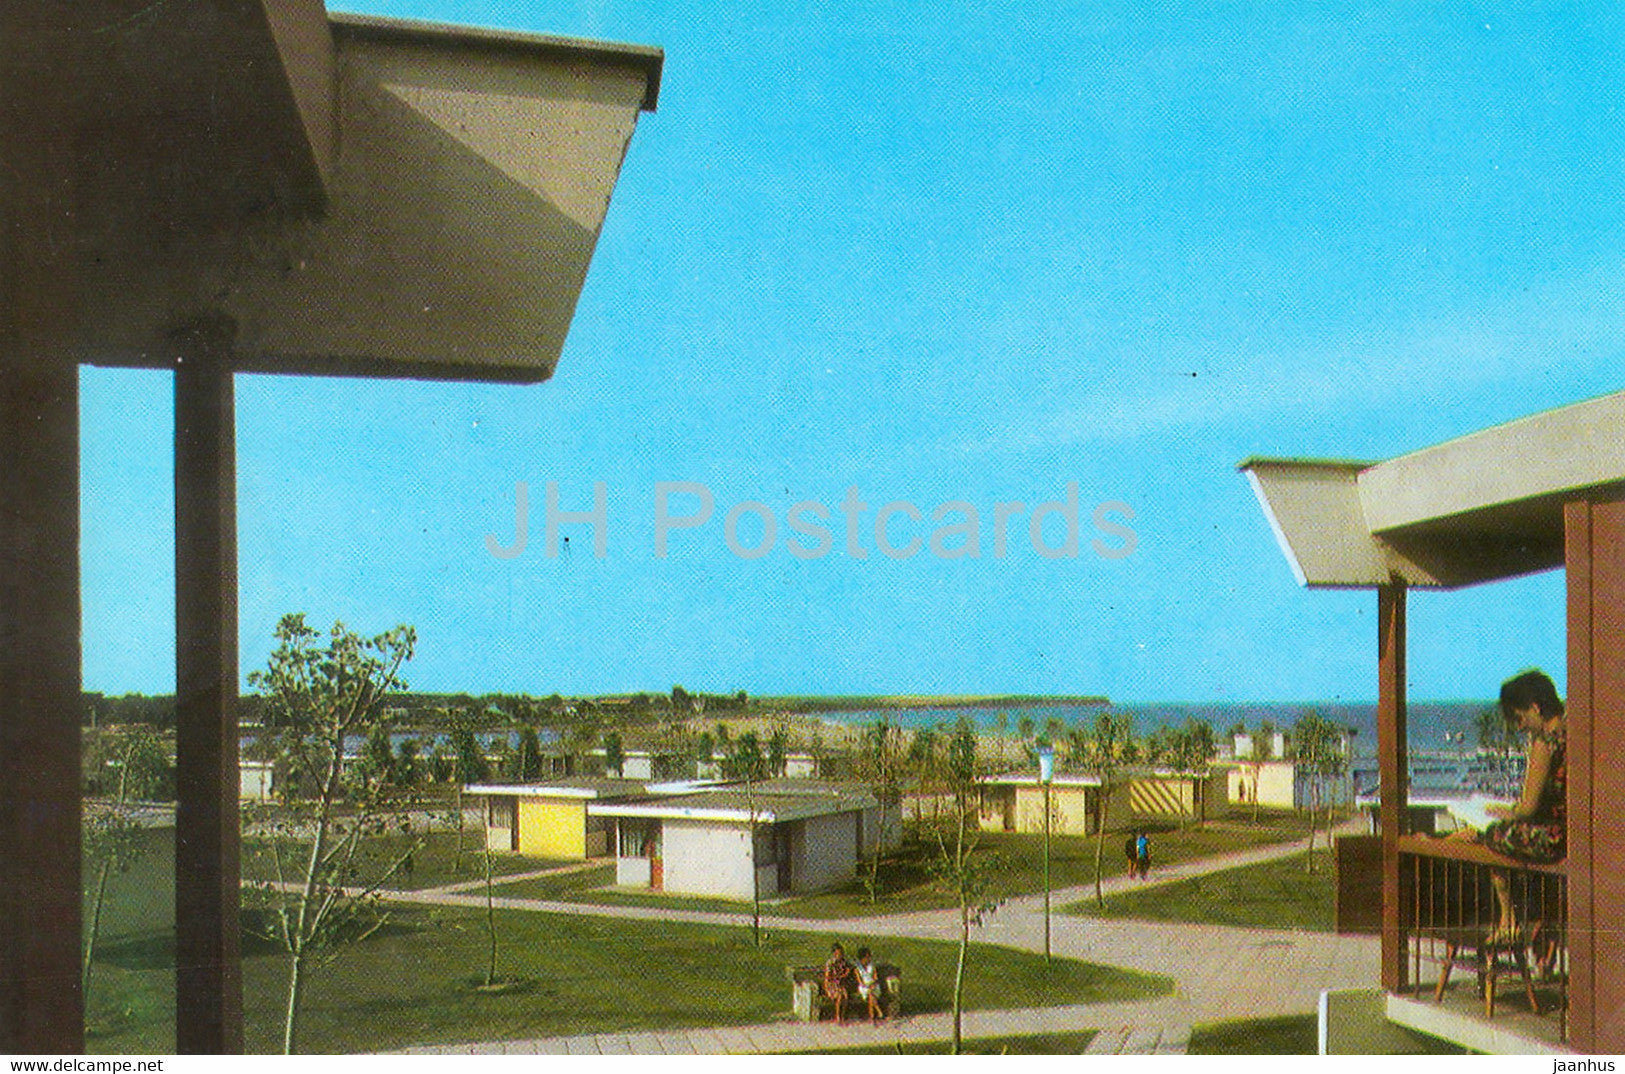 Costinesti - 1968 - Romania - used - JH Postcards